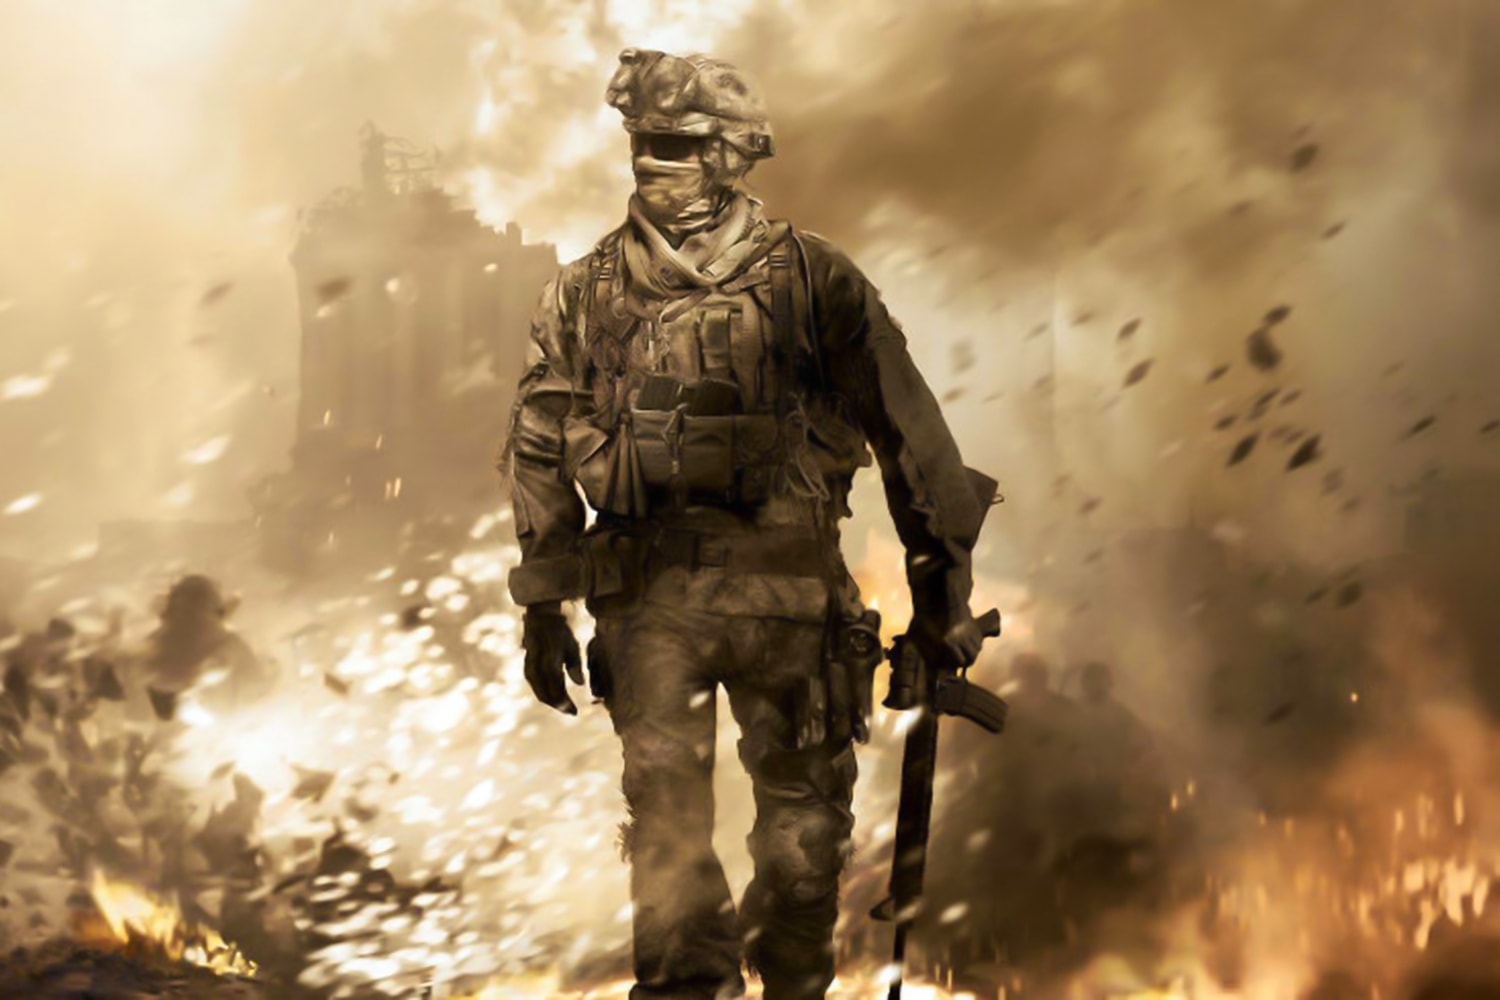 Call of Duty World At War Backwards Compatible, Activision, Xbox